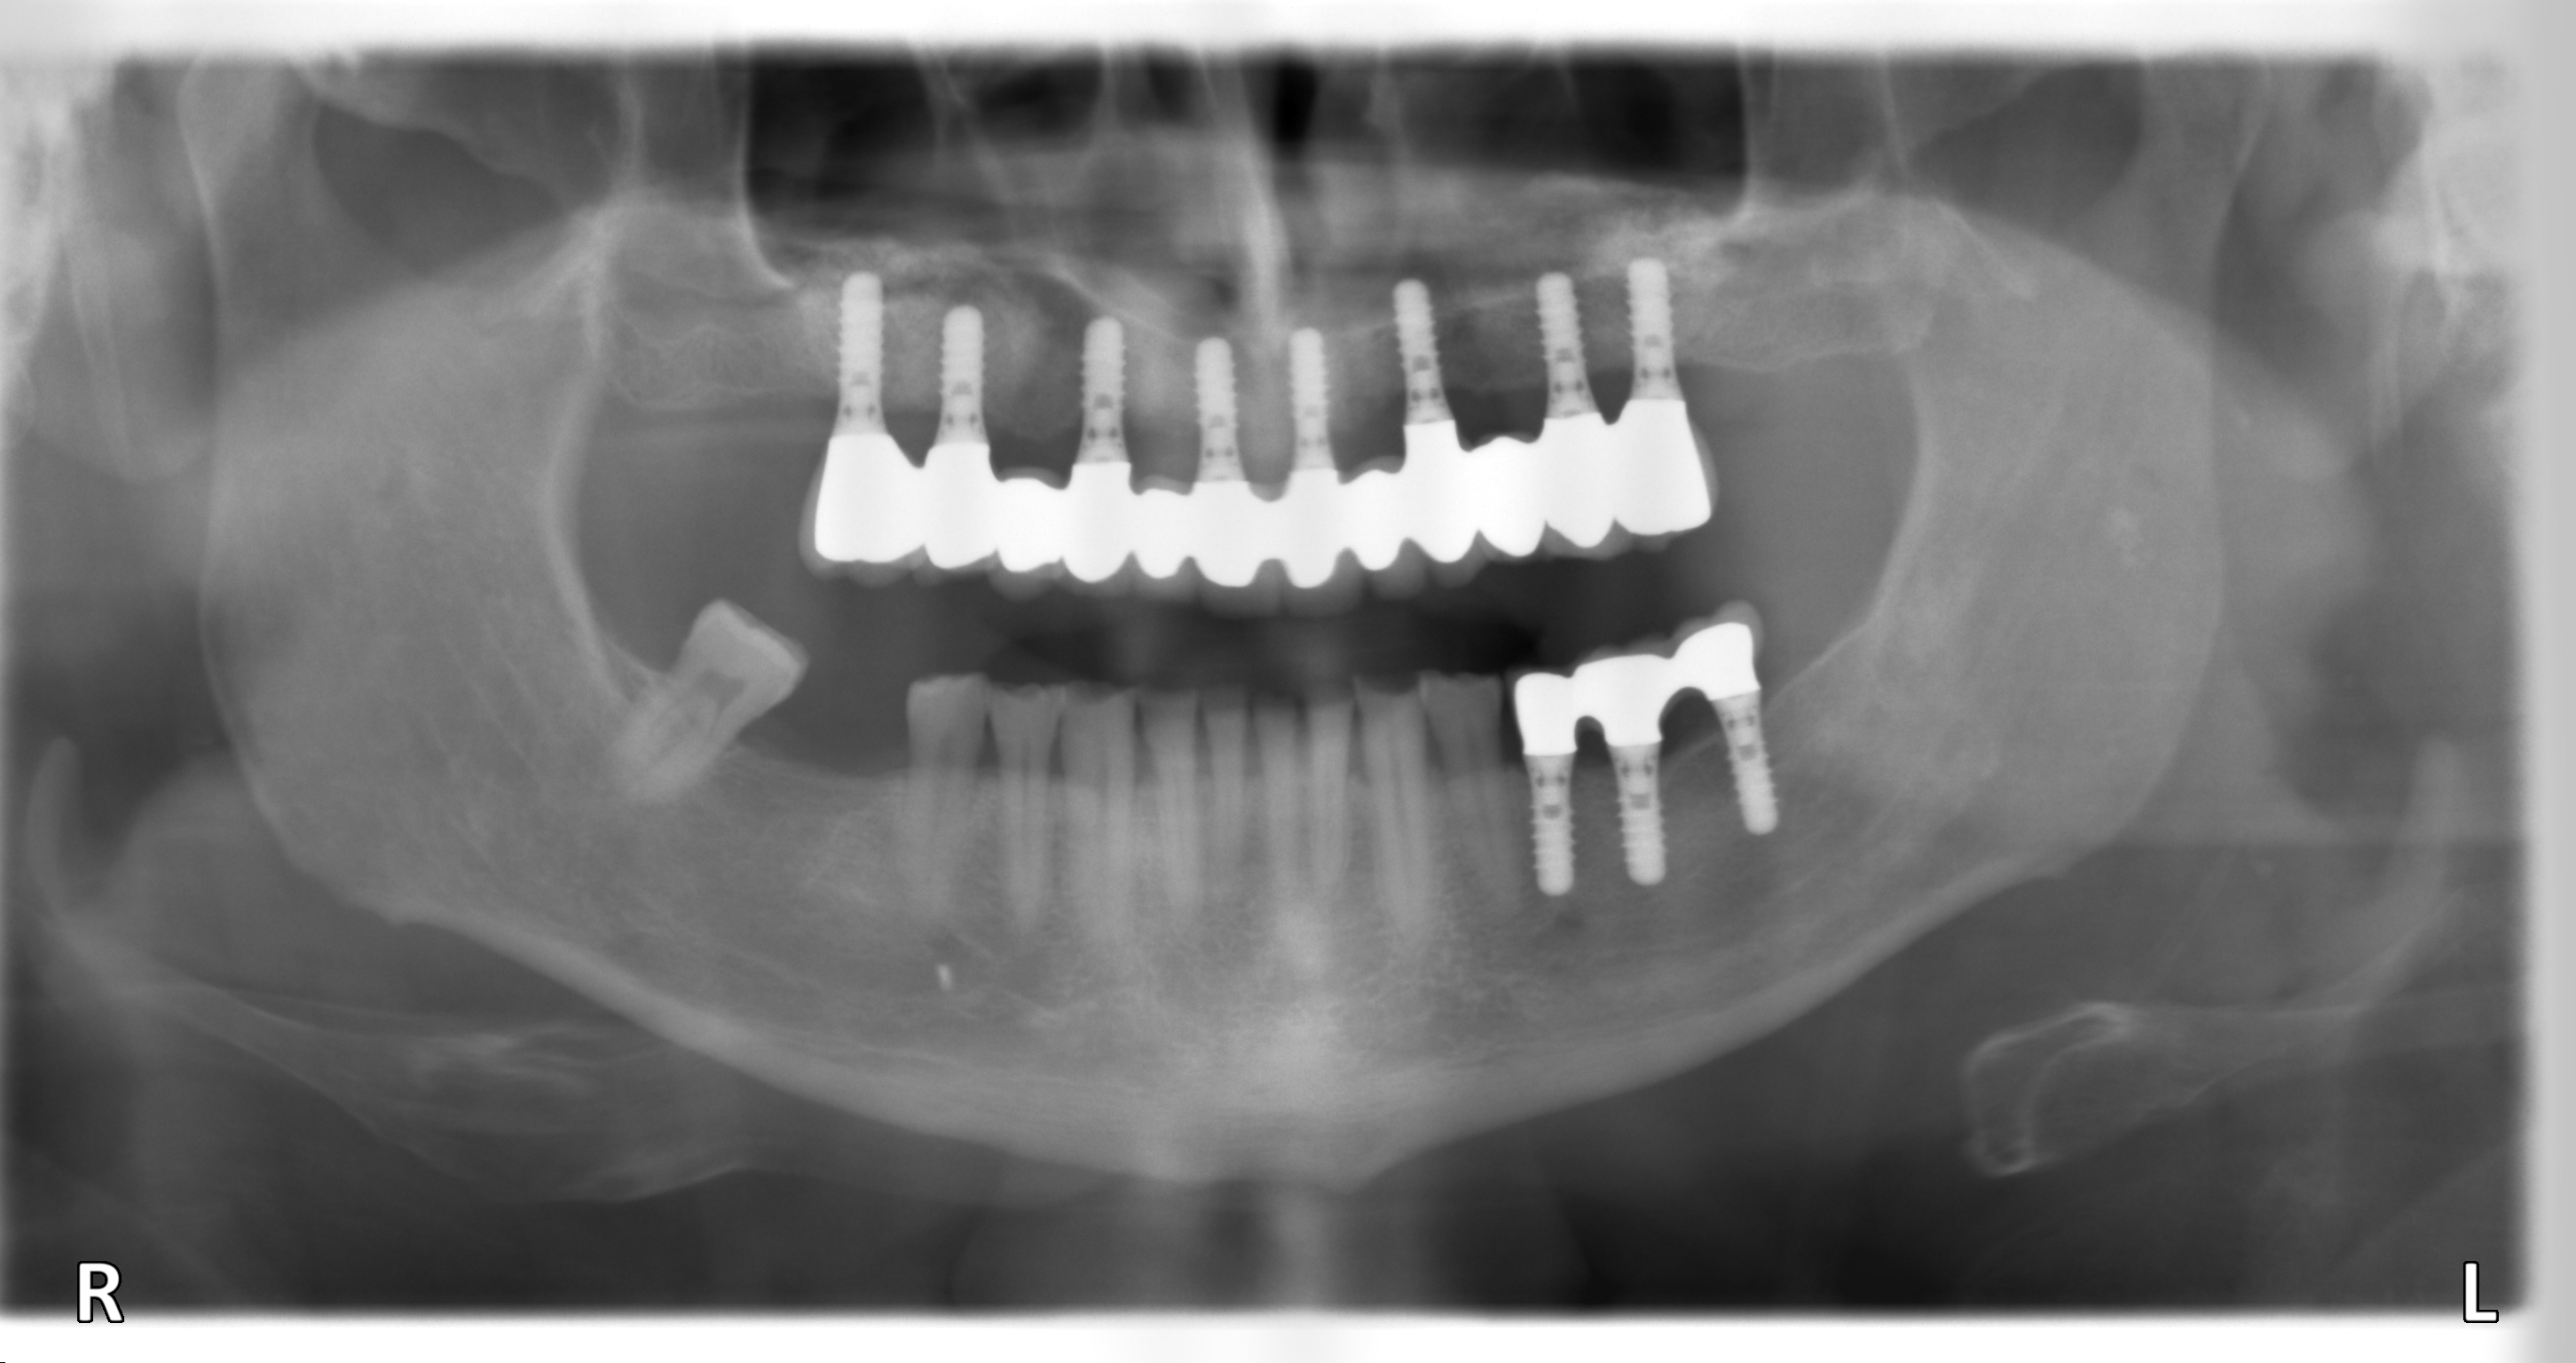 Zahnarzt Hildesheim setzt mehr als 2000 Implantate jährlich